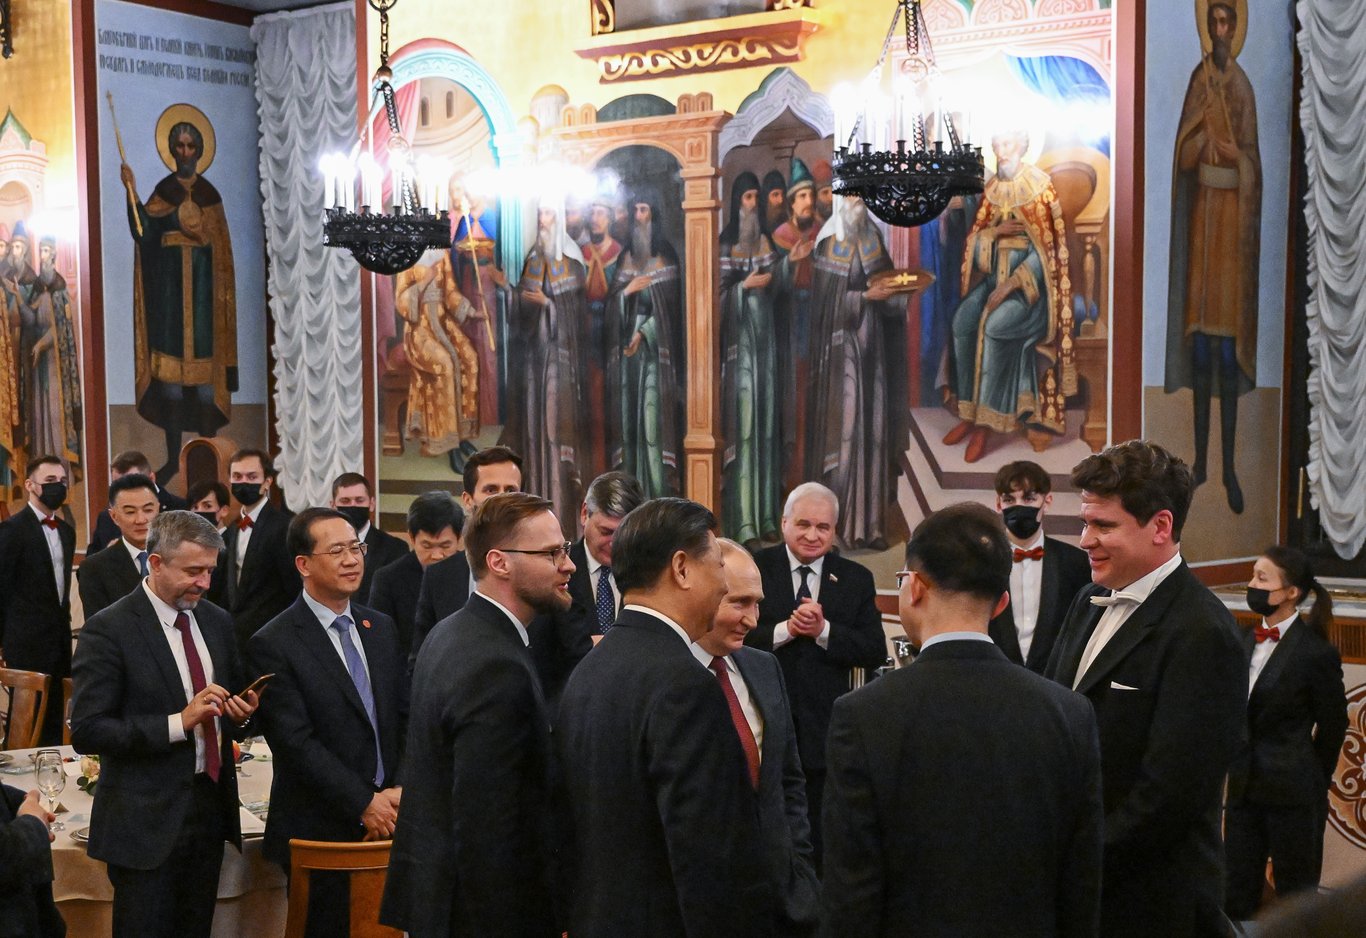 Rusya Devlet Başkanı Vladimir Putin ile Çin Devlet Başkanı Xi Jingping'in tarihi görüşmesinden dikkat çeken görüntü